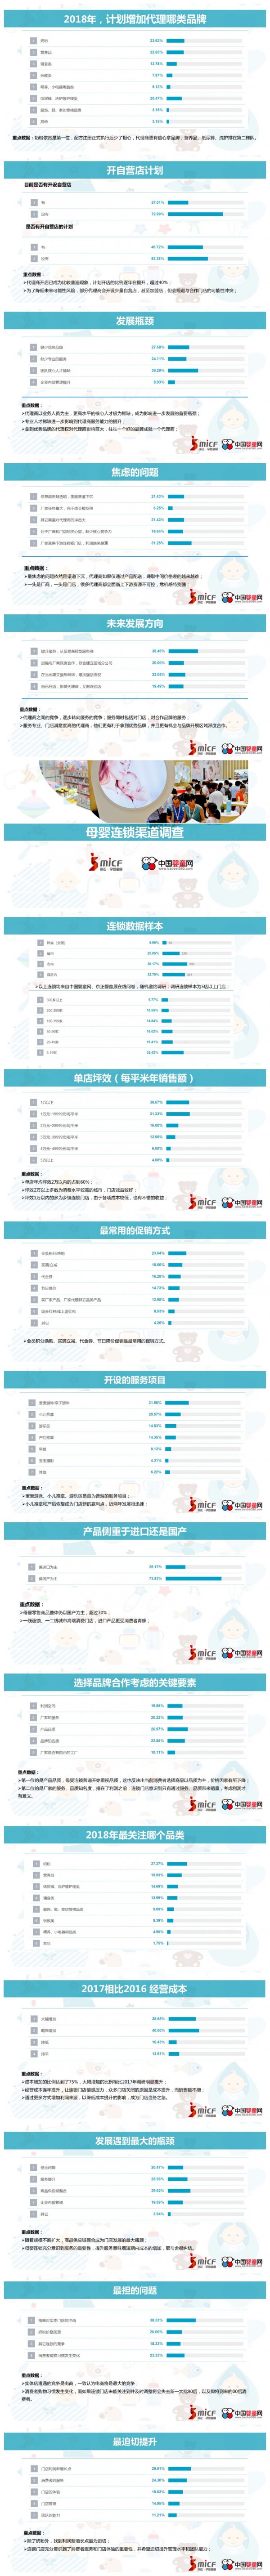 行业数据调研-2018中国母婴渠道市场调研数据发布汇总